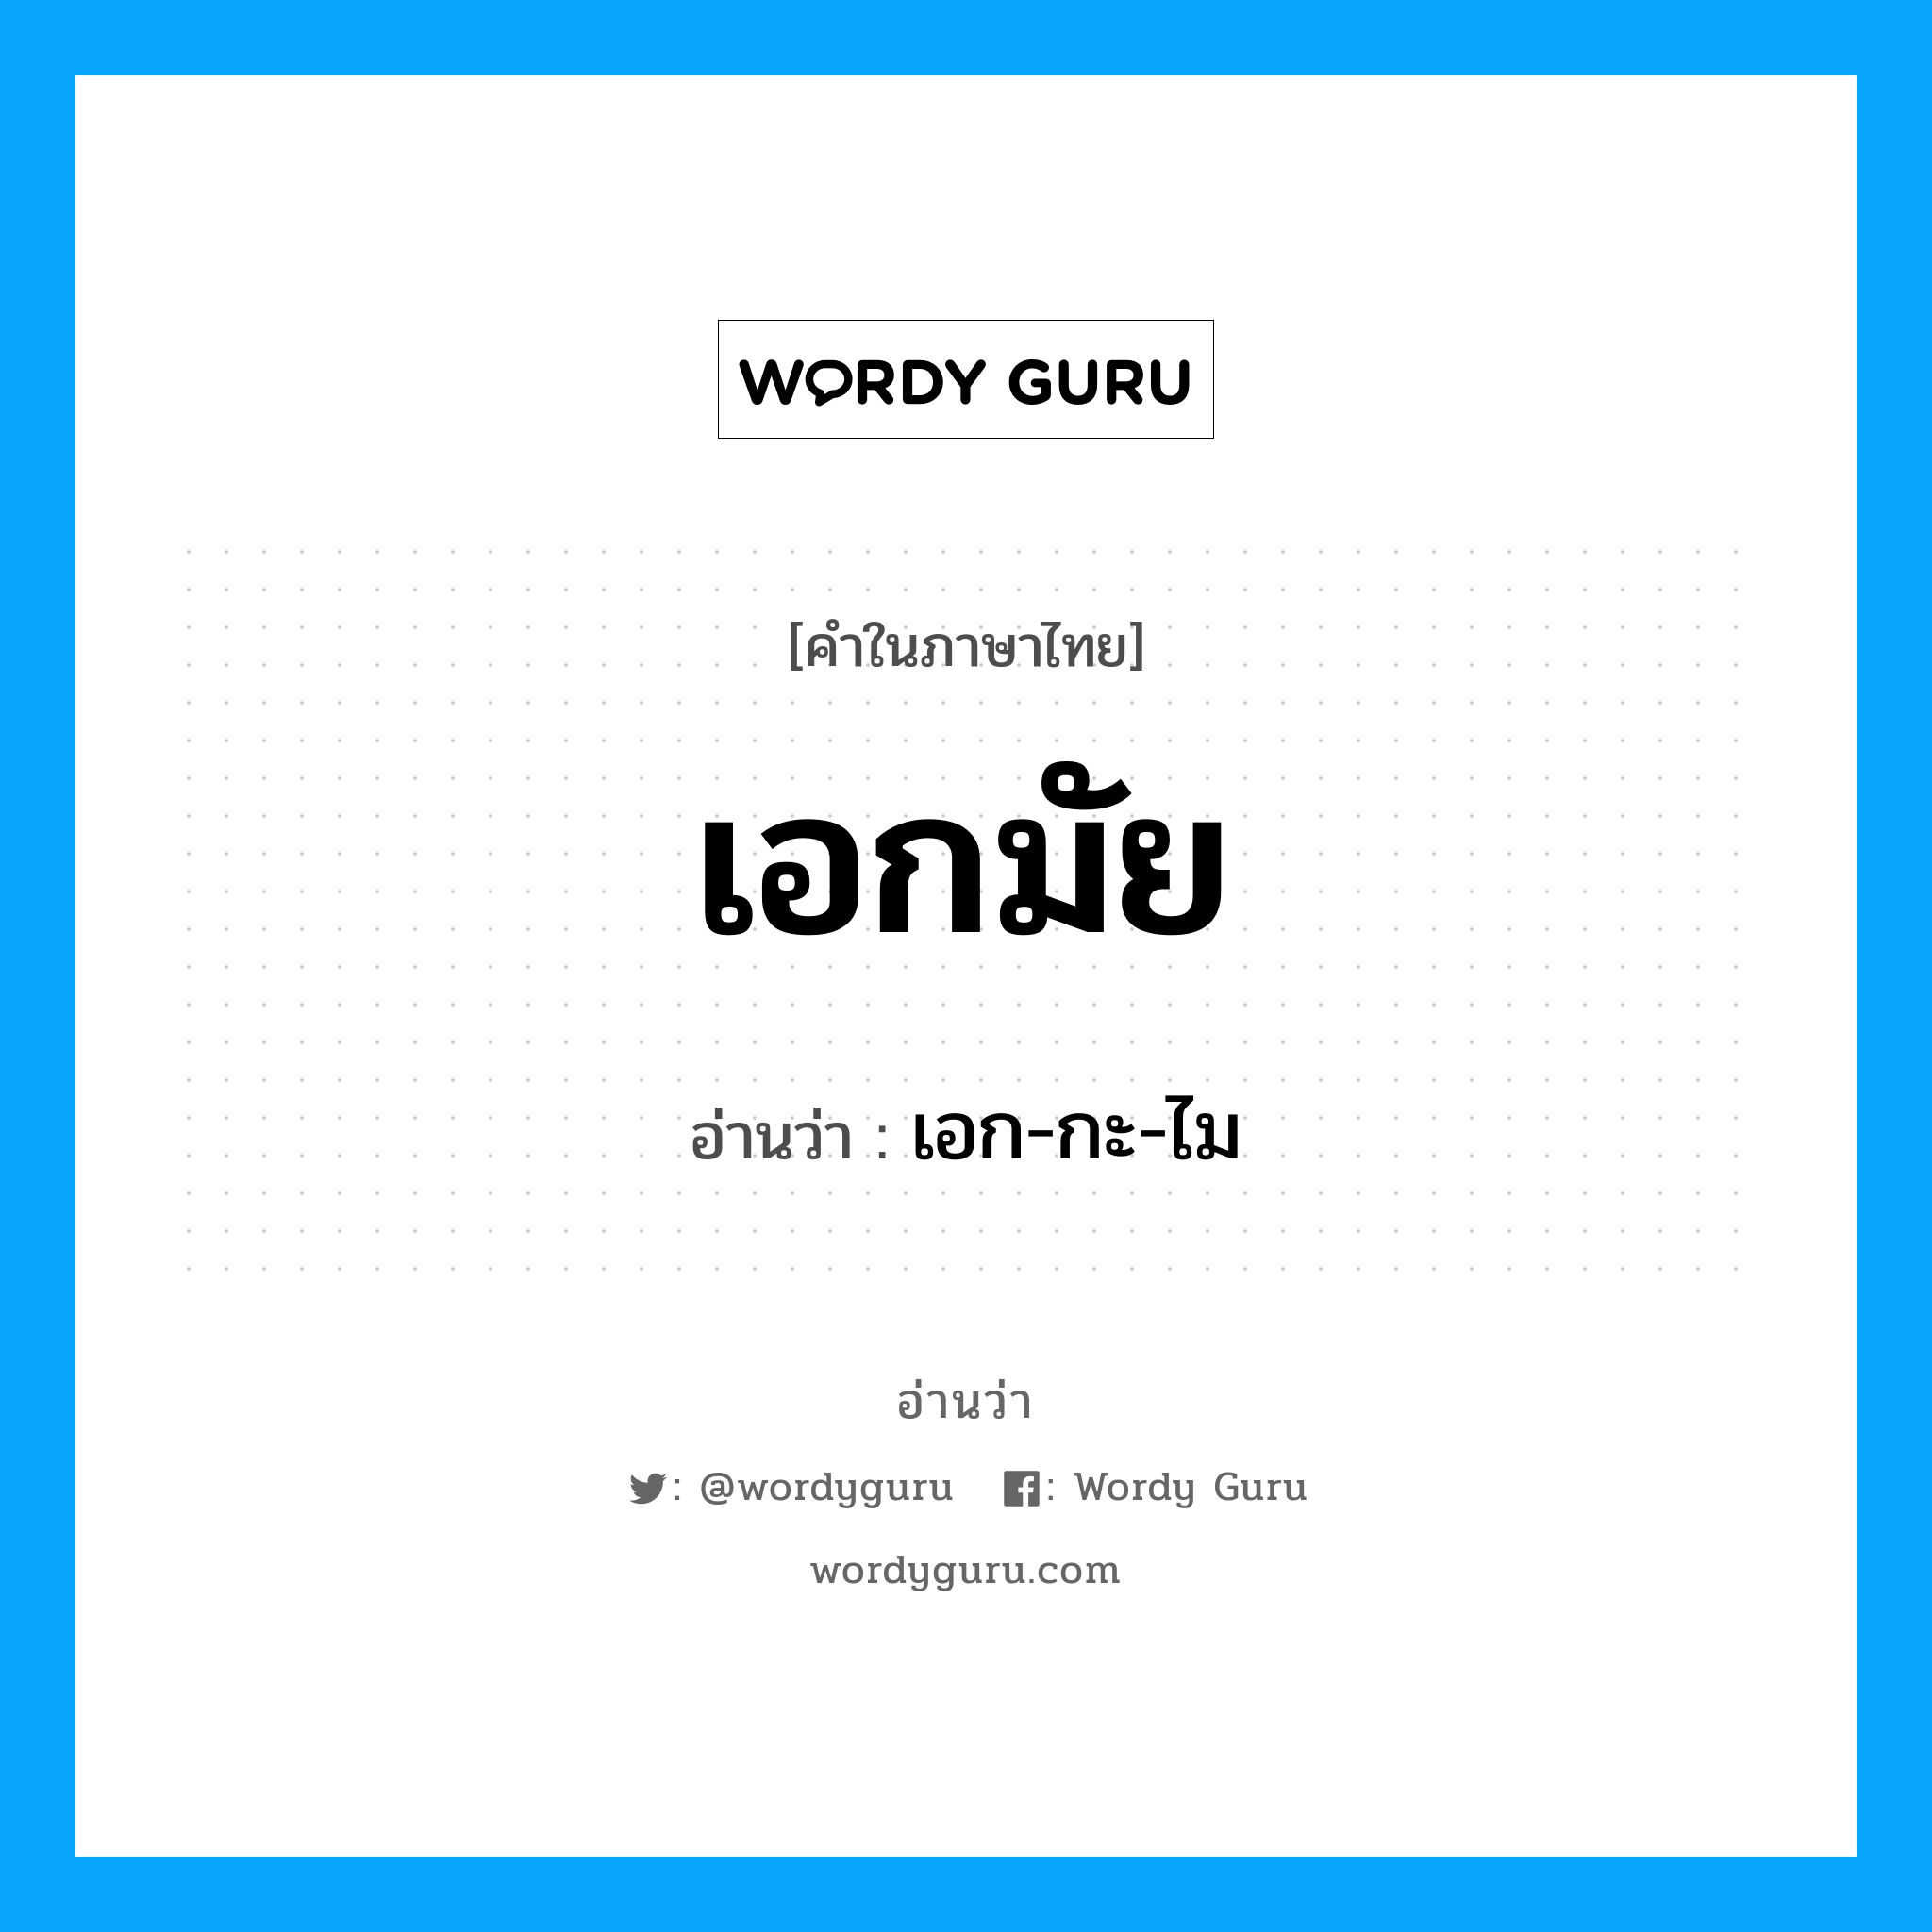 เอก-กะ-ไม เป็นคำอ่านของคำไหน?, คำในภาษาไทย เอก-กะ-ไม อ่านว่า เอกมัย